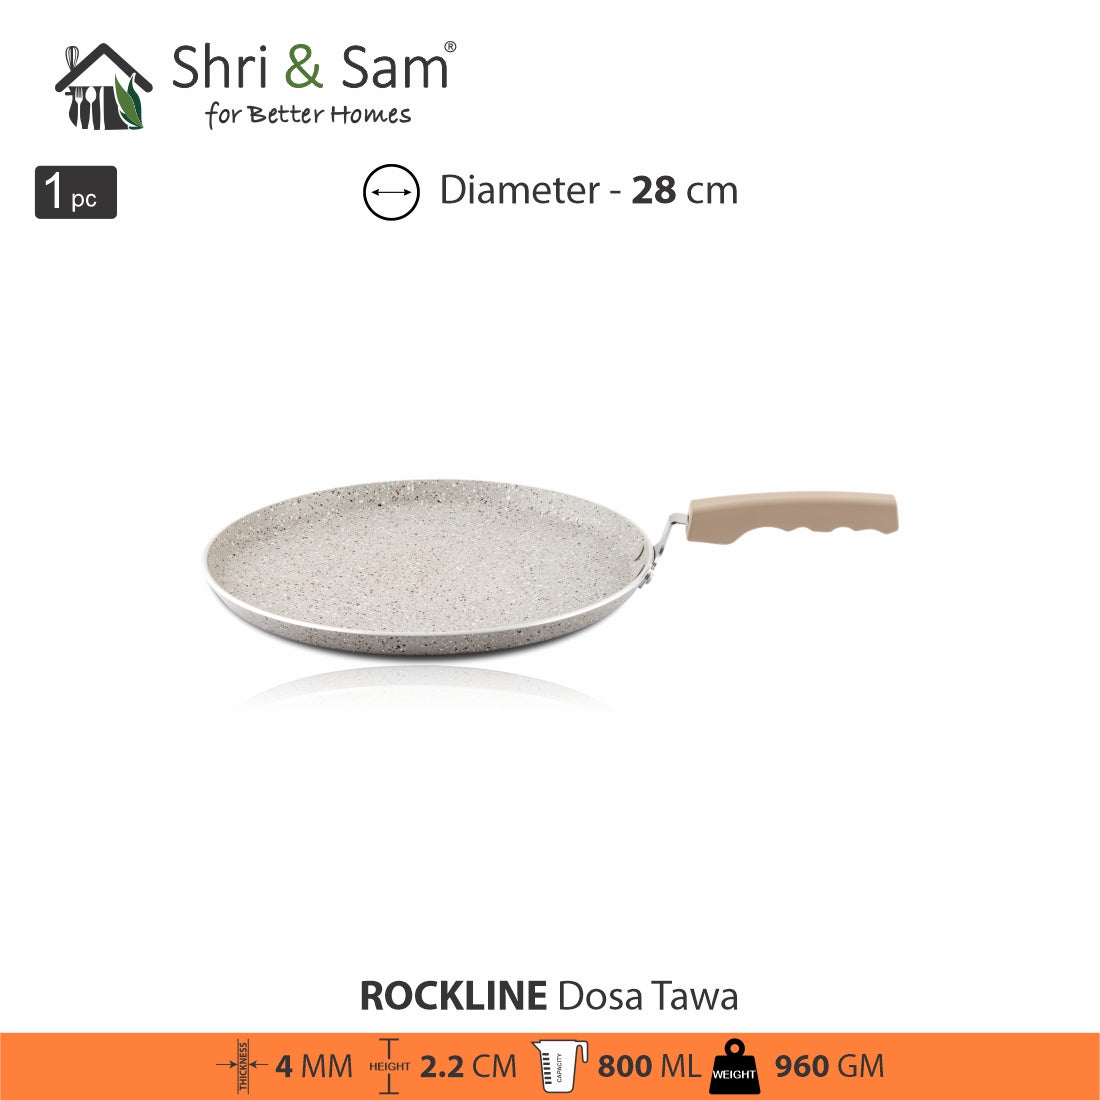 Aluminium Non-Stick Dosa Tawa Rockline